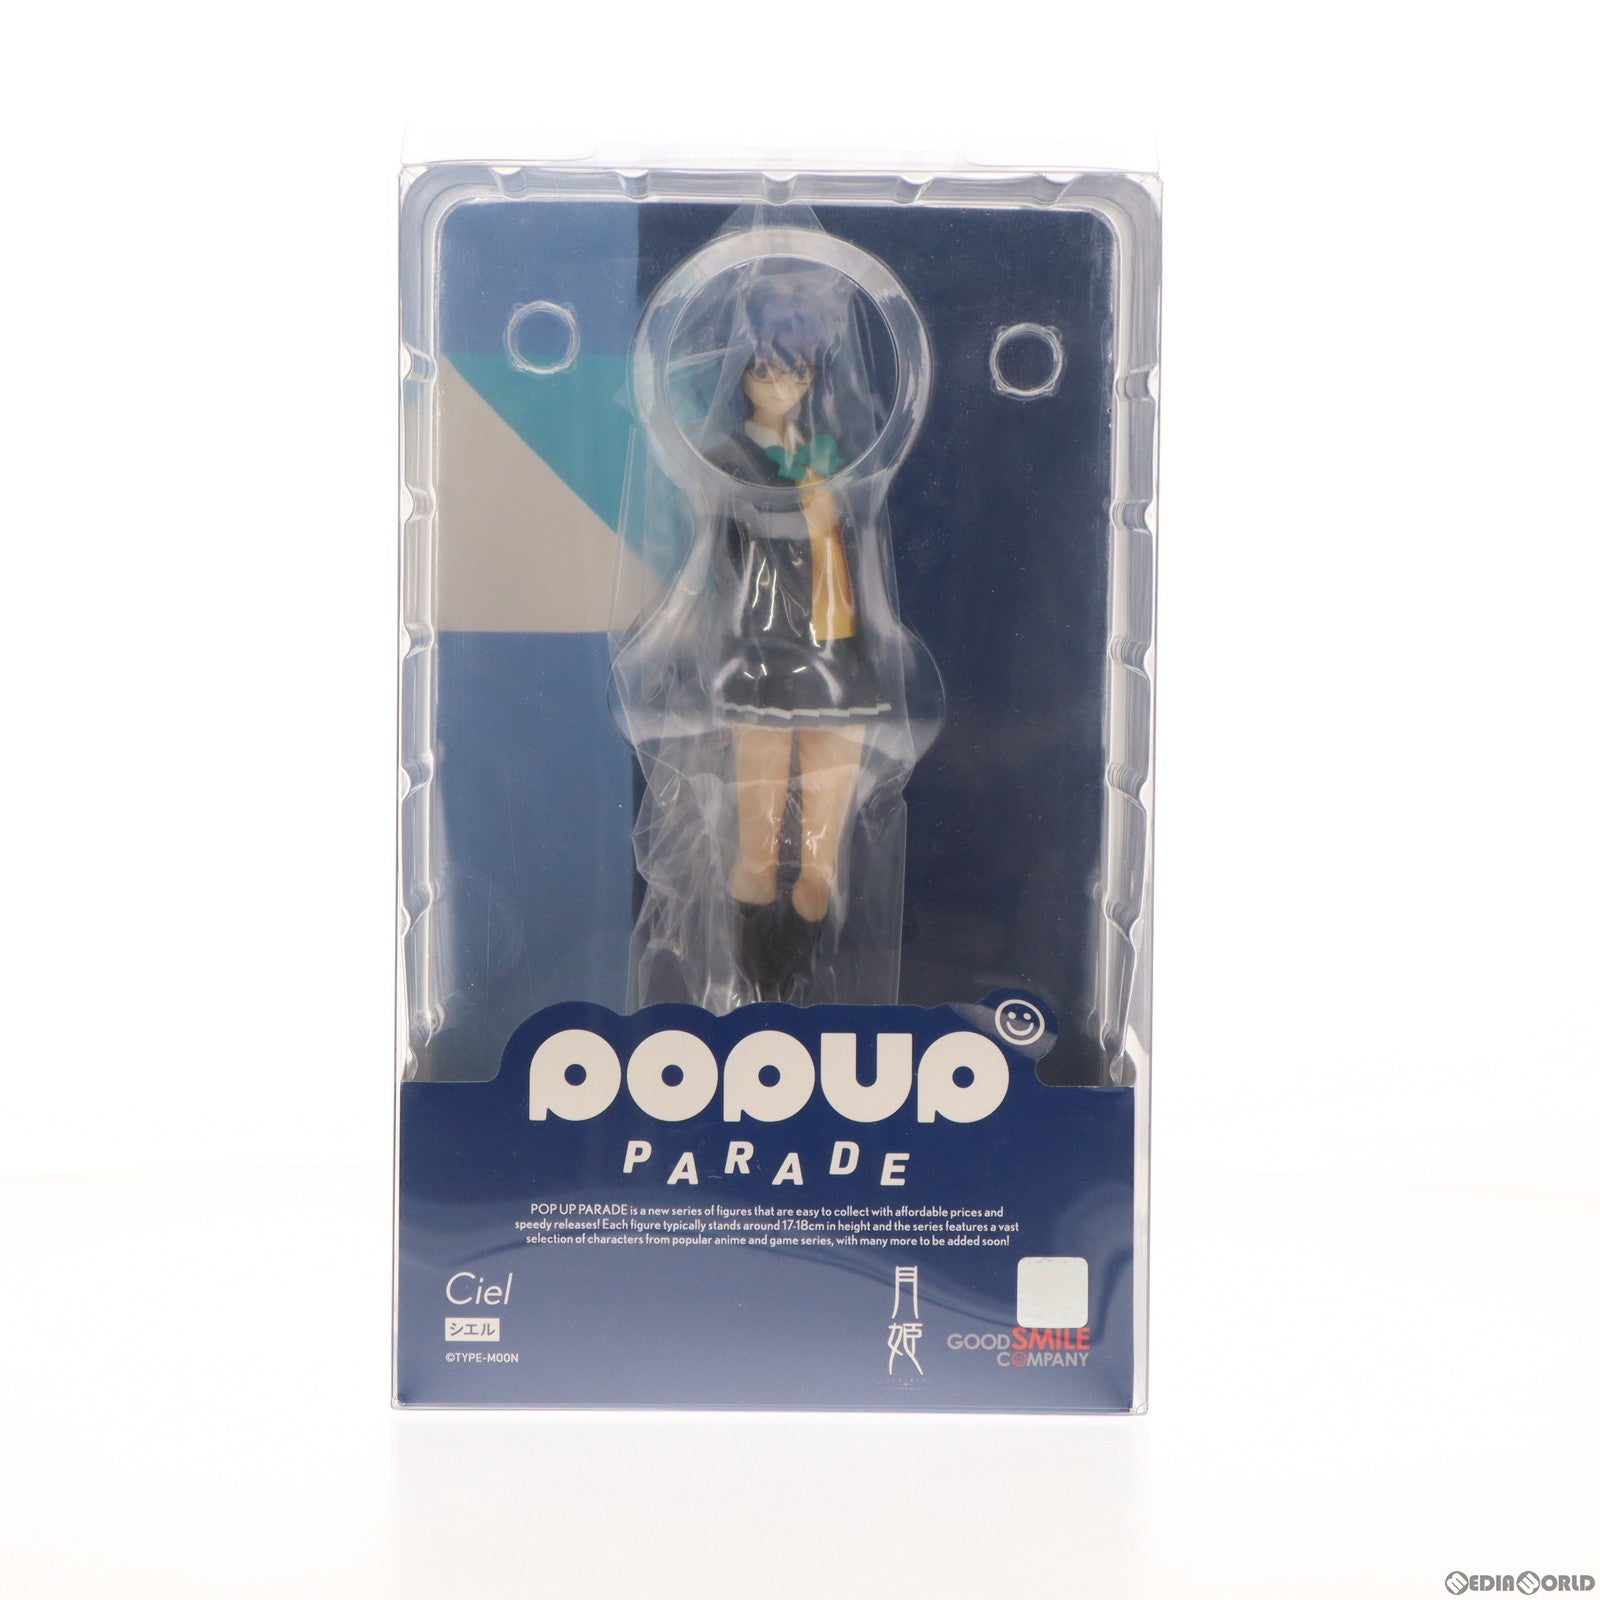 【中古即納】[FIG]POP UP PARADE(ポップアップパレード) シエル 月姫 -A piece of blue glass moon- 完成品 フィギュア グッドスマイルカンパニー(20230831)